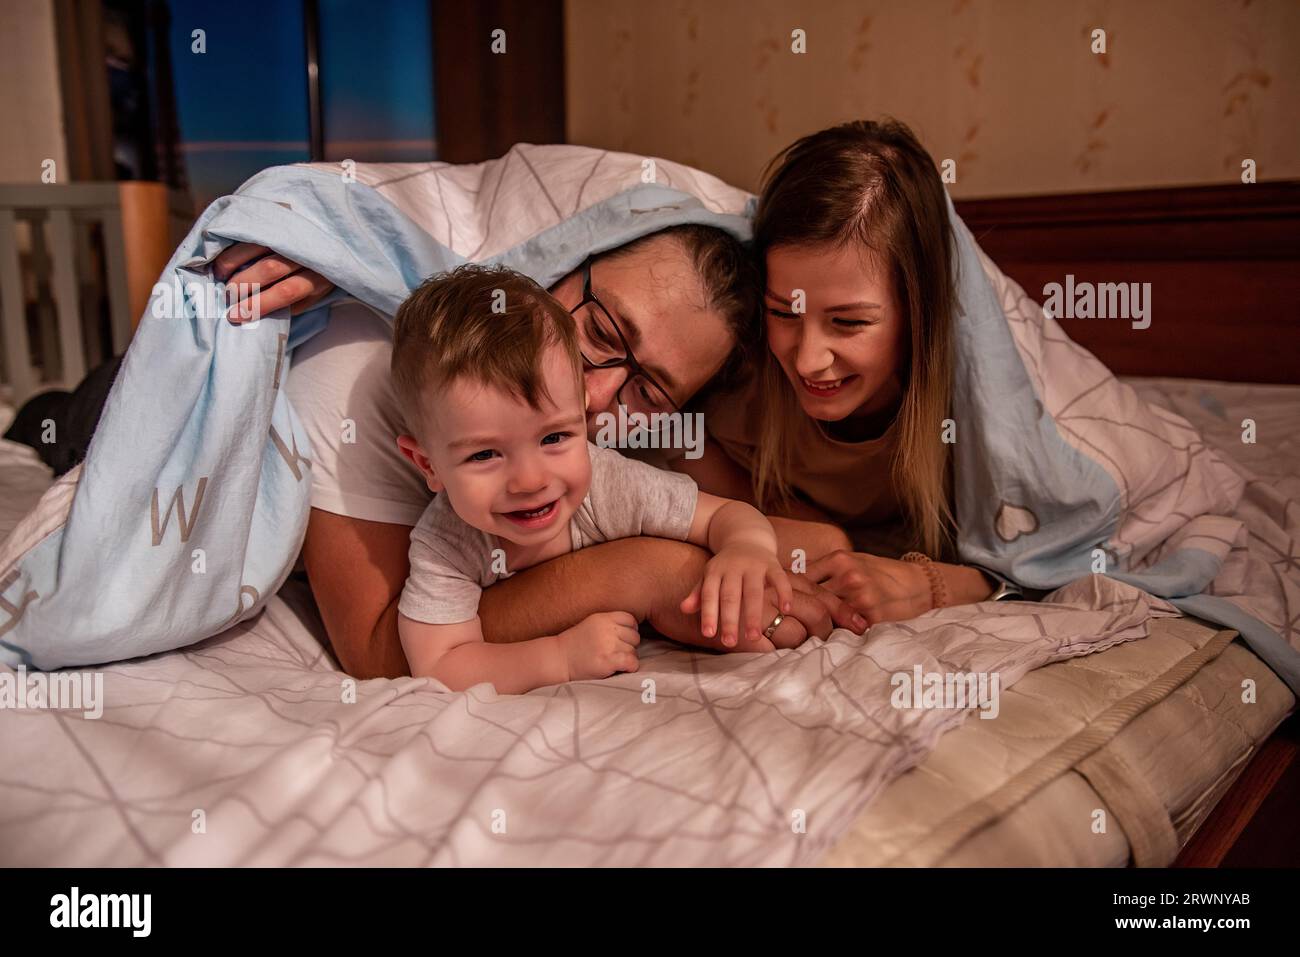 Die fröhliche, süße Familie versteckt sich mit dem kleinen Sohn unter der Decke. Mutter und Vater versuchen, ein aktives Baby zu fangen, der lustige Junge läuft vor den Eltern weg. Junge Ma Stockfoto